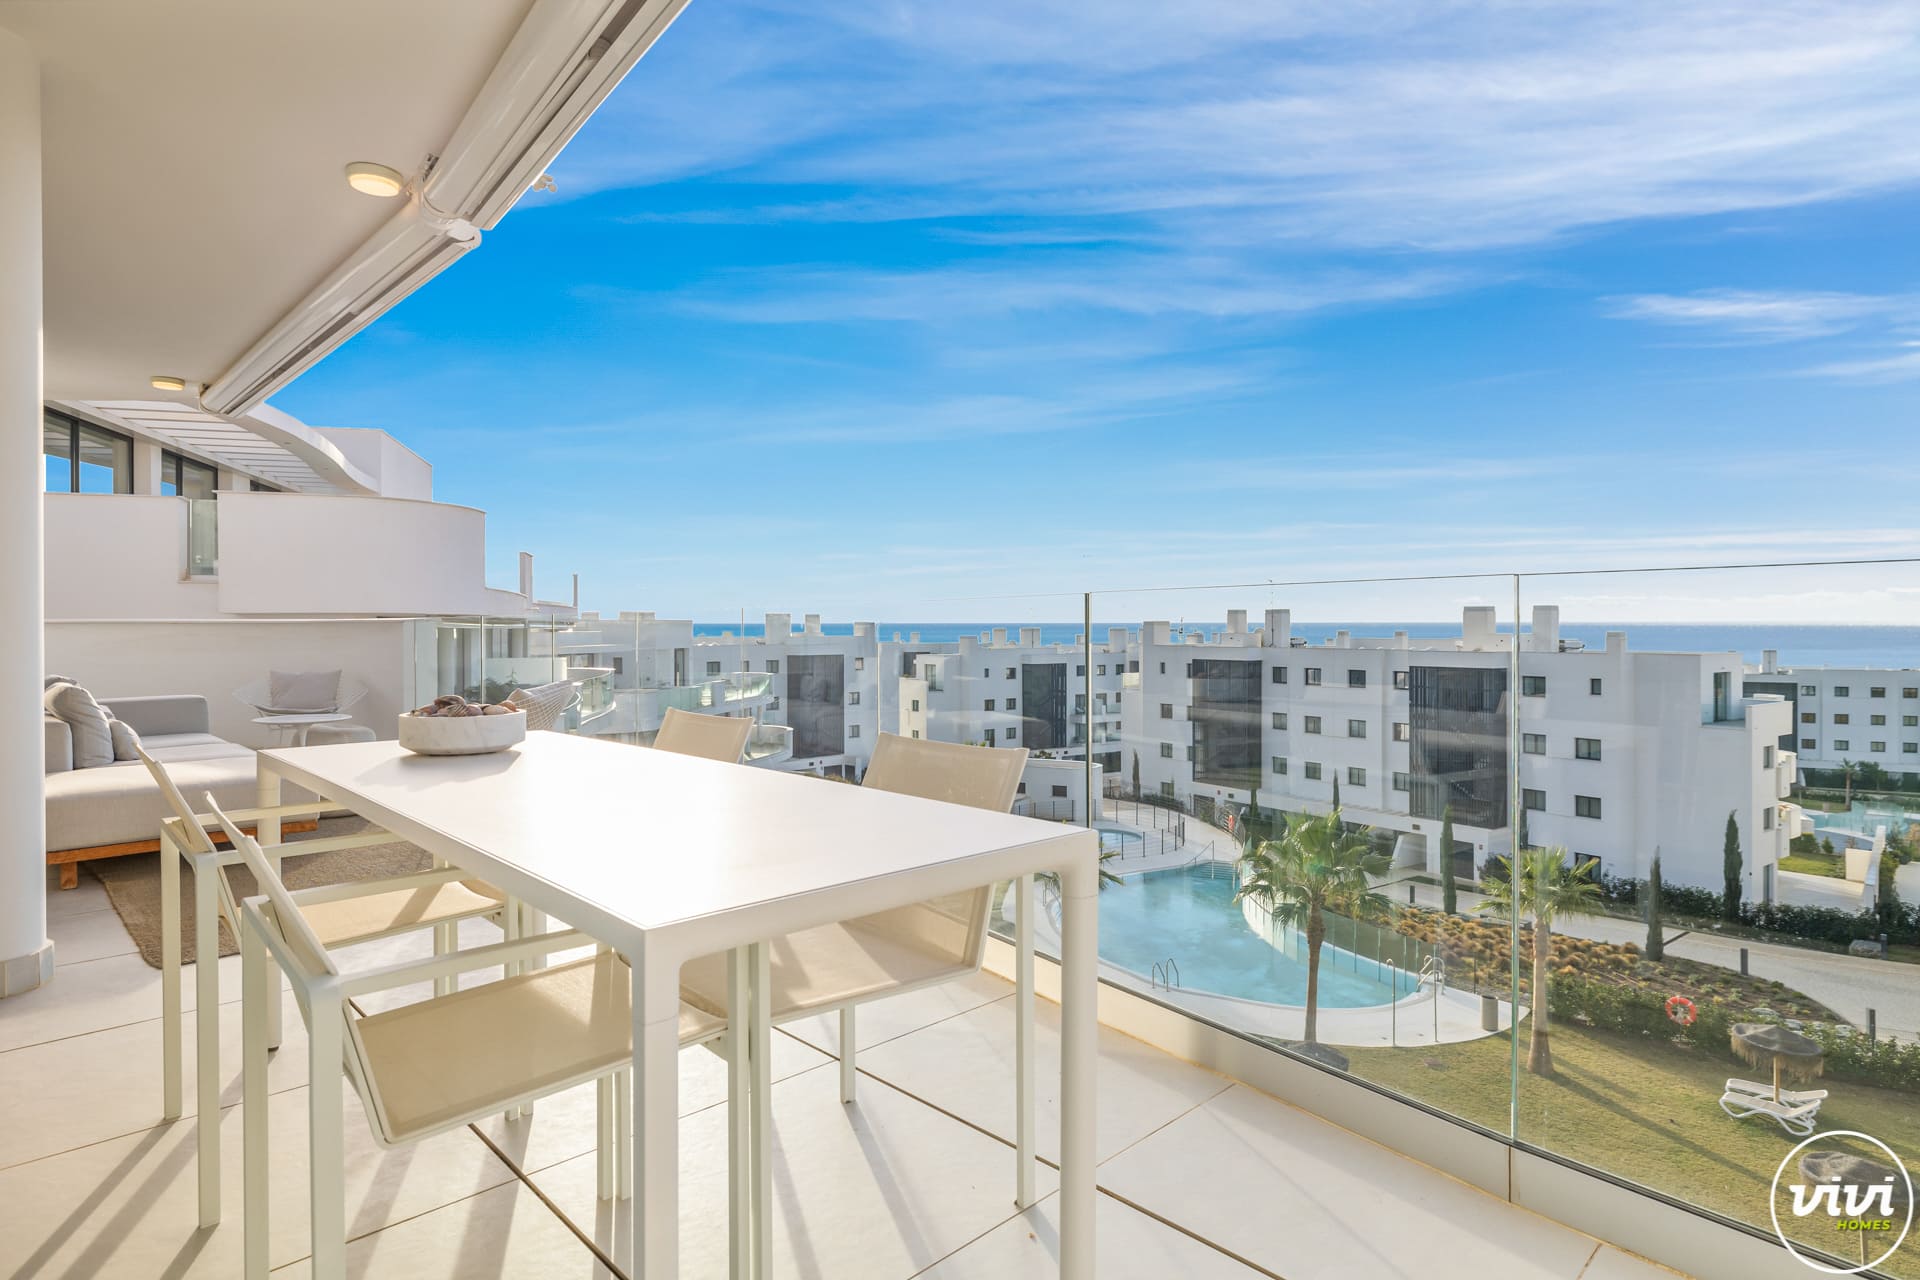 ViVi Real Estate: Eine moderne Wohnung im mittleren Stockwerk mit einem Balkon mit Blick auf das Meer.